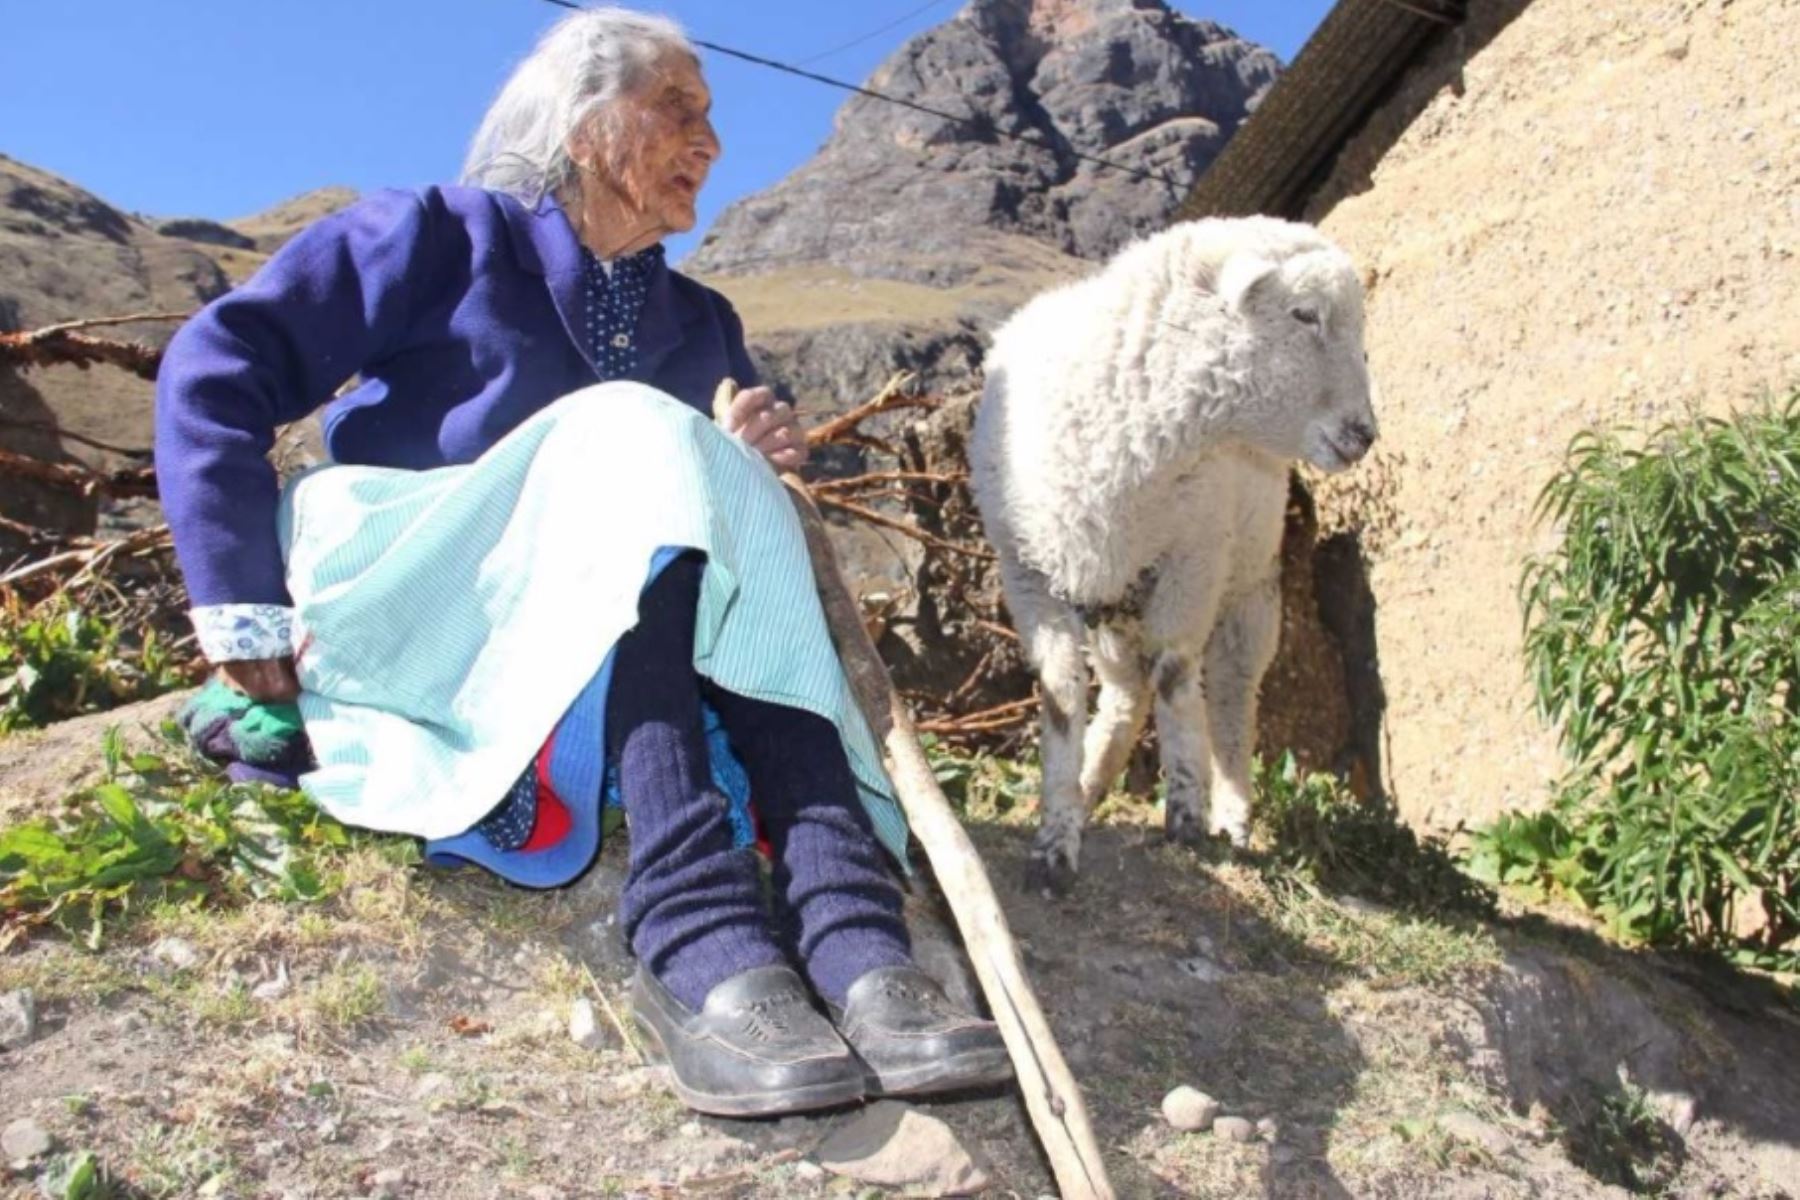 La ayacuchana María Flores Rojas es la usuaria más longeva de Pensión 65. Nació en Condorpampa, caserío del anexo de Ccalani, distrito de Upahuacho, provincia de Parinacochas, donde ha vivido sus 116 años.